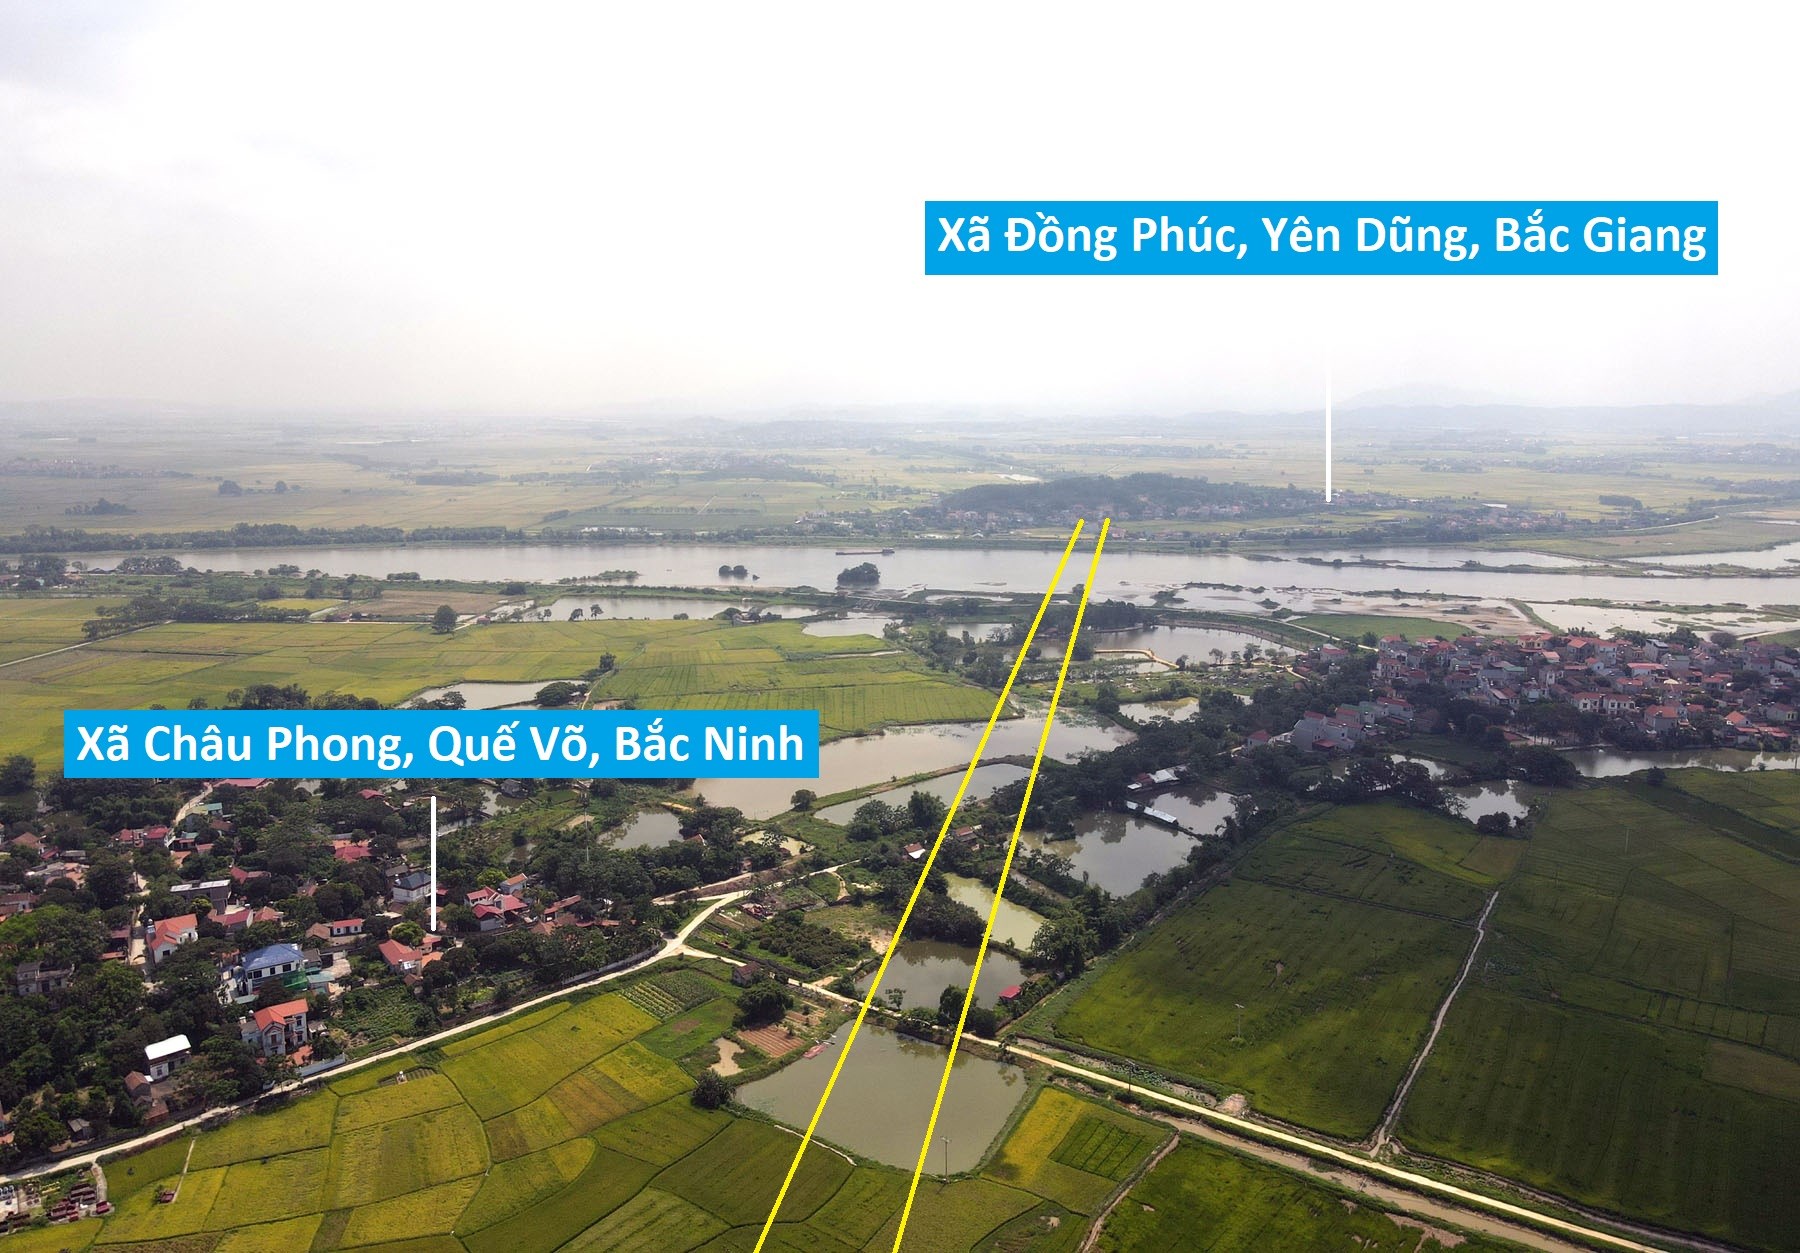 Toàn cảnh vị trí quy hoạch xây cầu vượt sông Cầu trên tuyến cao tốc Nội Bài - Hạ Long nối Bắc Ninh - Bắc Giang